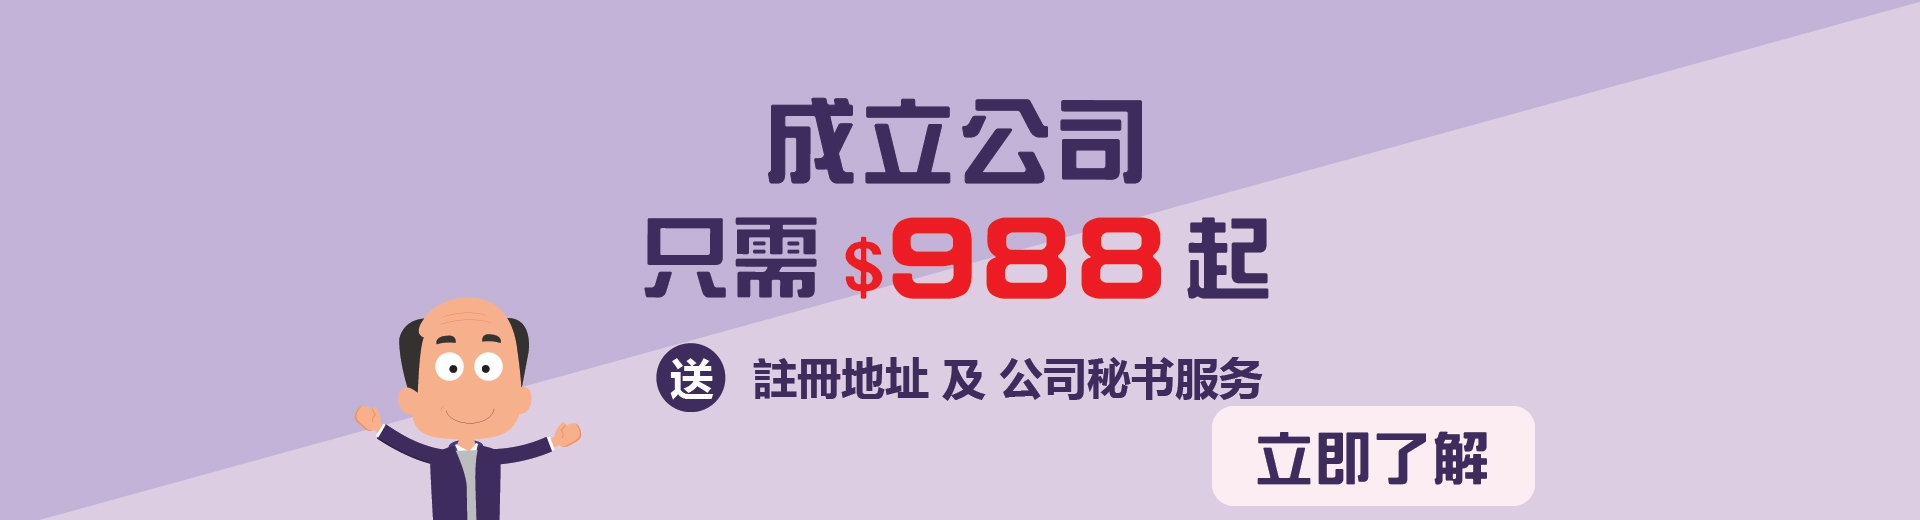 ready-made company HK$988 up